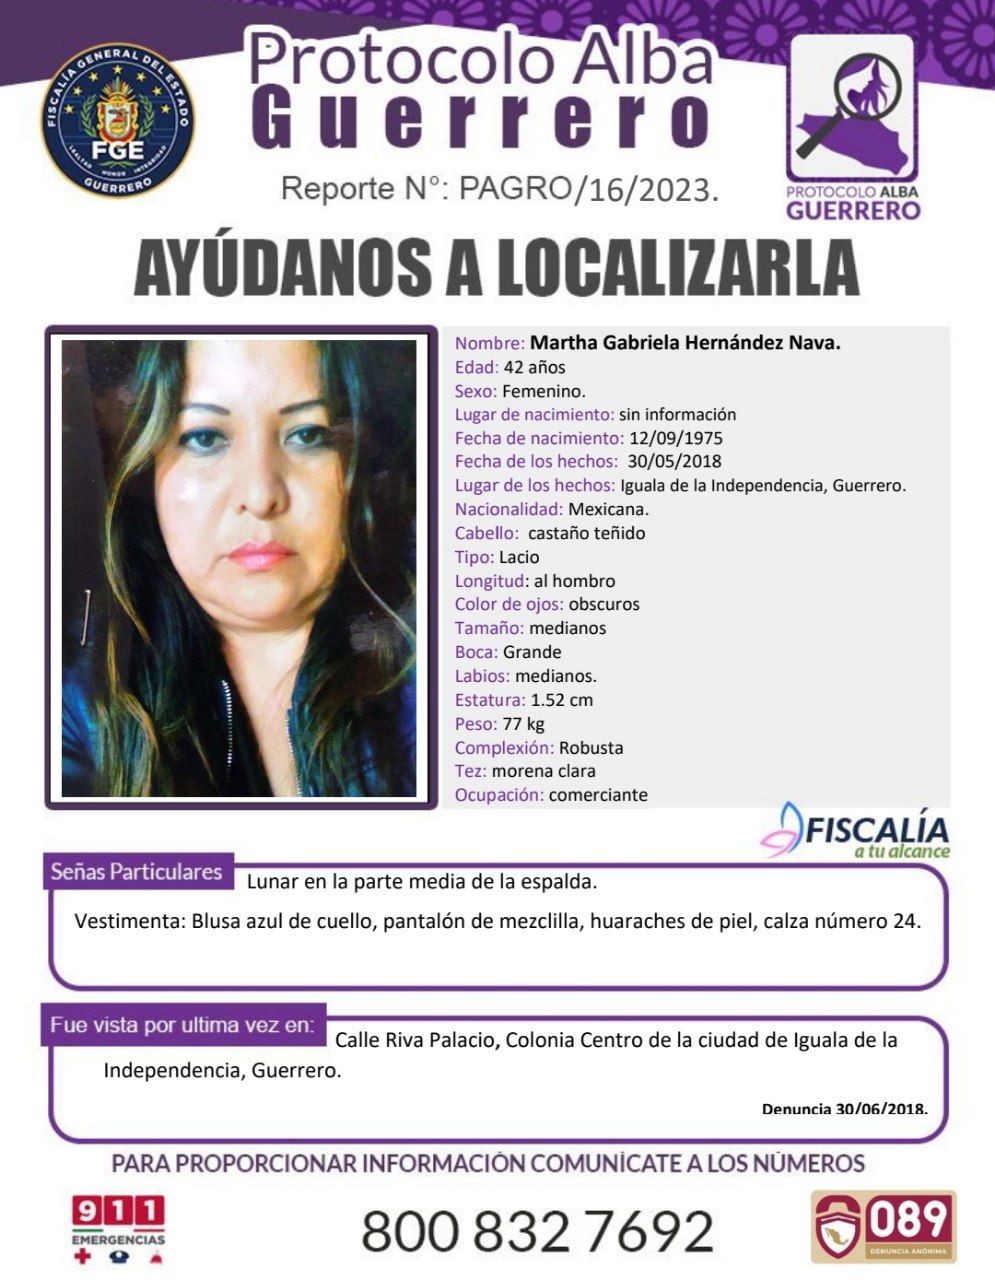 Fiscalía General Del Estado Solicita Su Colaboración Para Localizar A Martha Gabriela Hernández Nava.